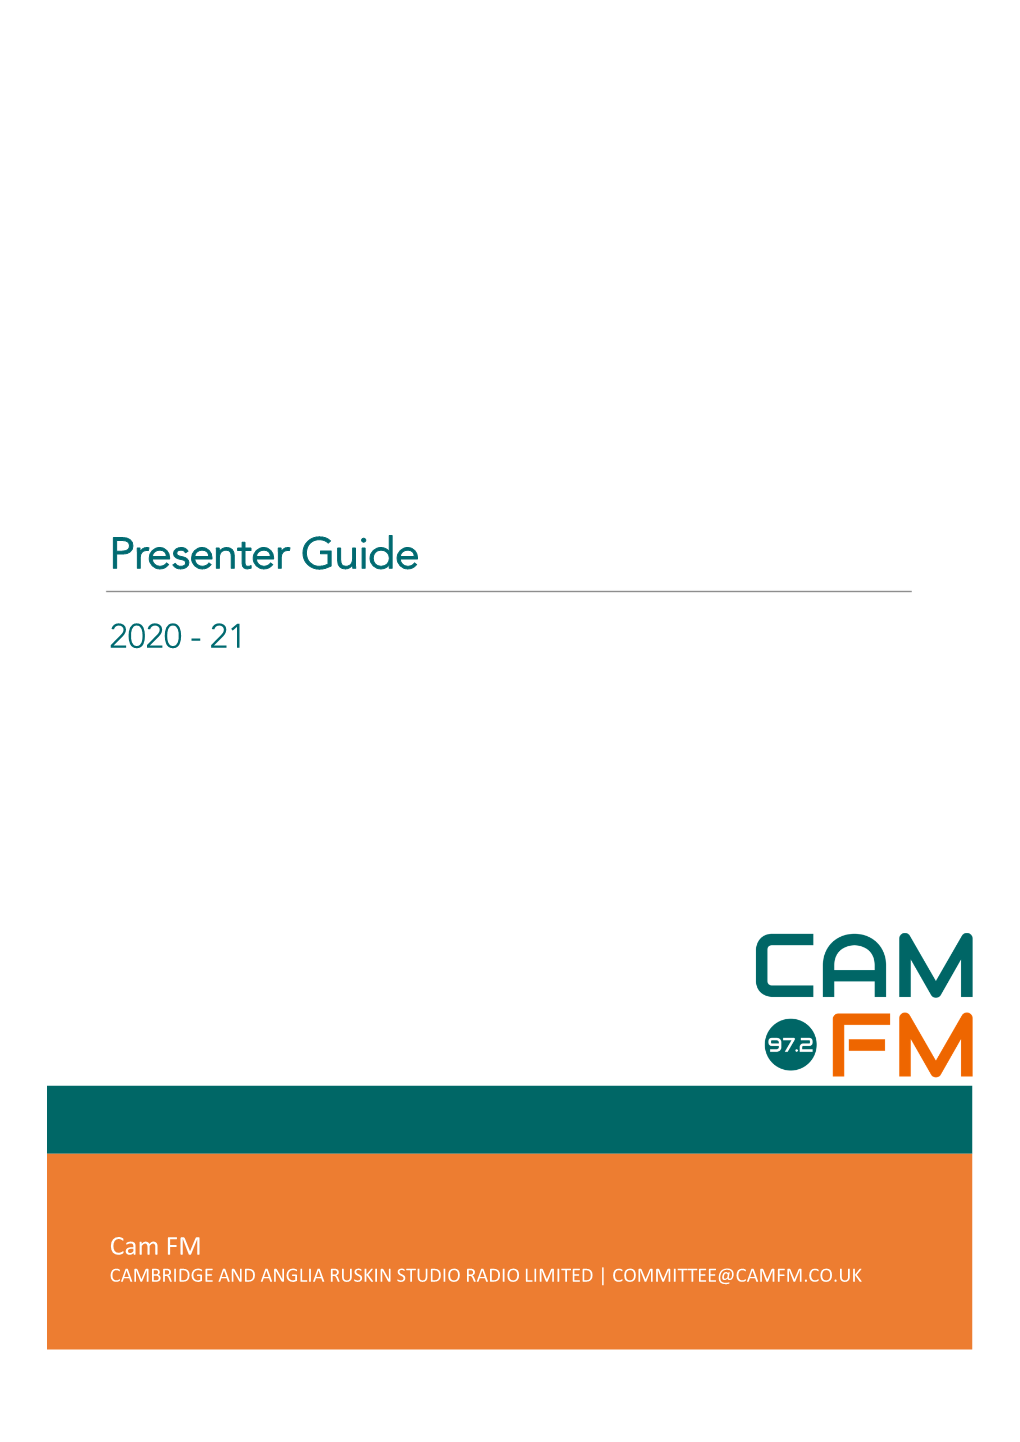 Cam FM Presenter Guide 2020-21